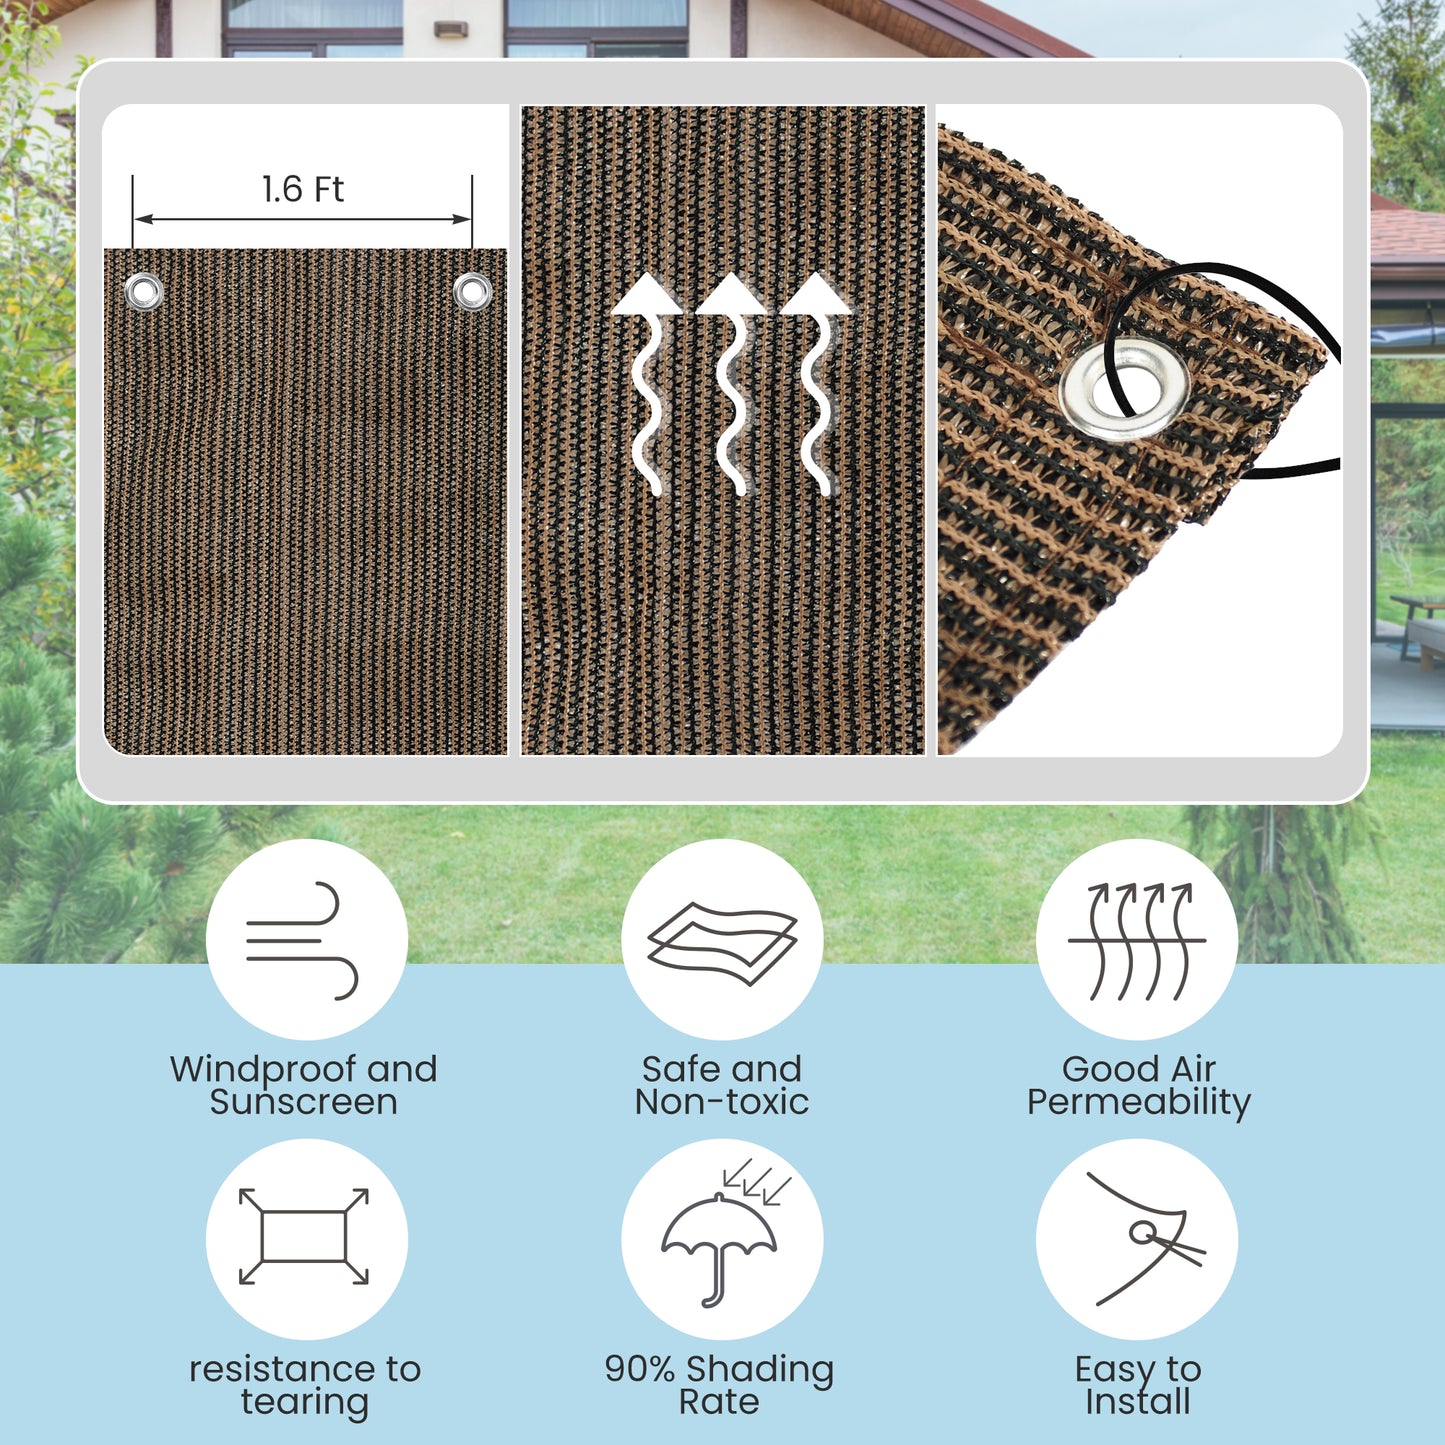 90% Shade Fabric Sun Shade Cloth Privacy Screen for Outdoor Patio Garden Pergola Cover Canopy